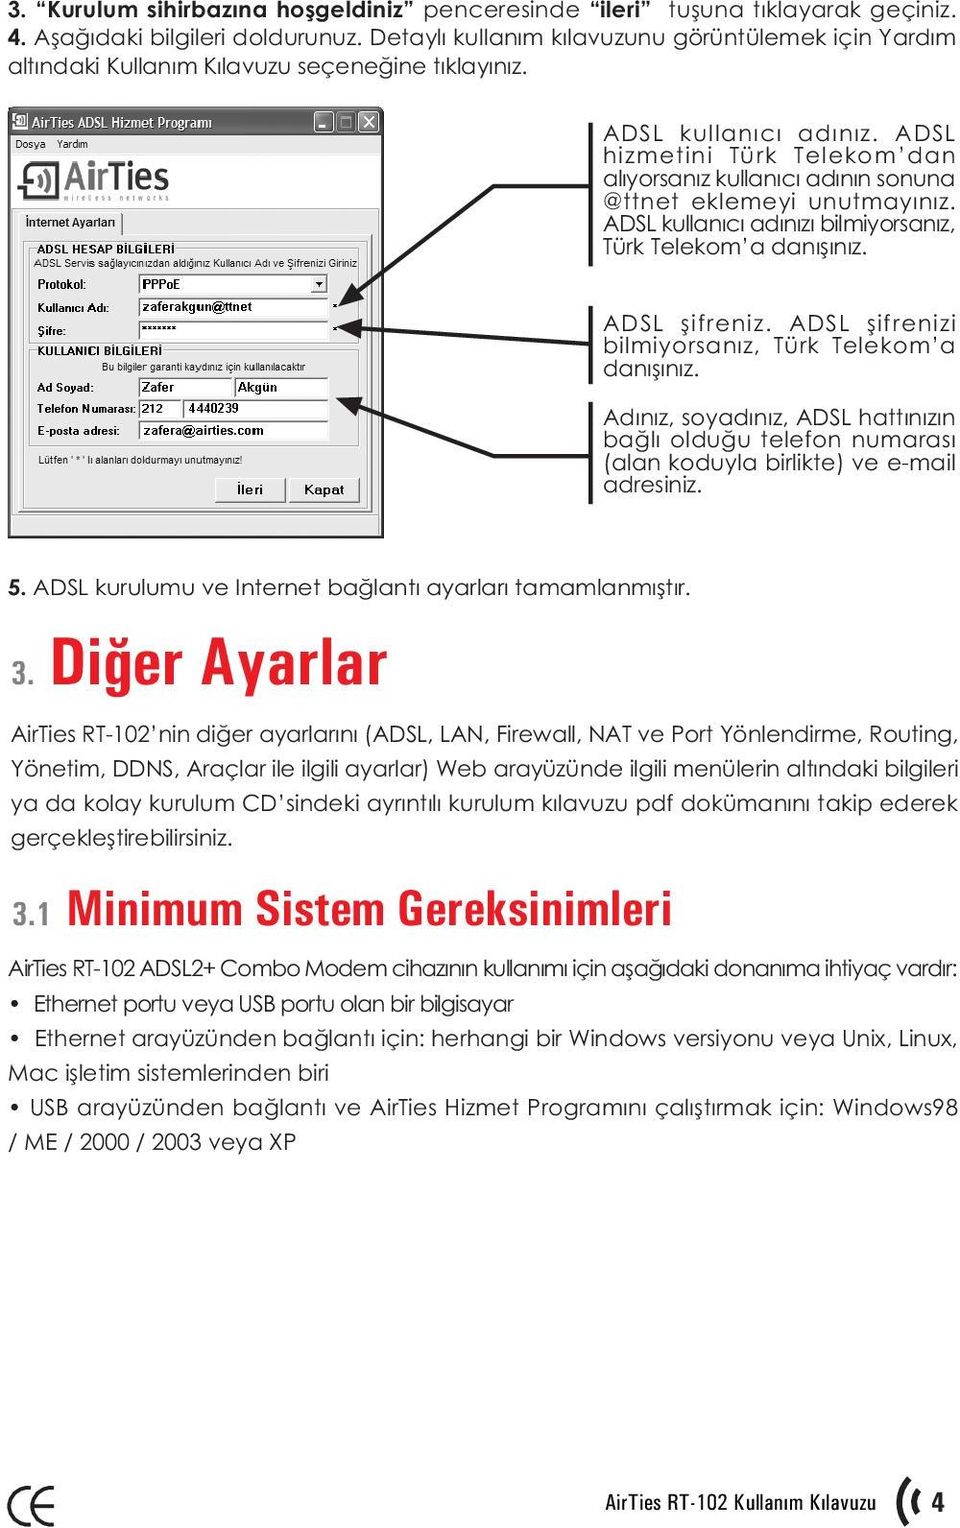 ADSL hizmetini Türk Telekom dan alýyorsanýz kullanýcý adýnýn sonuna @ttnet eklemeyi unutmayýnýz. ADSL kullanýcý adýnýzý bilmiyorsanýz, Türk Telekom a danýþýnýz. ADSL þifreniz.